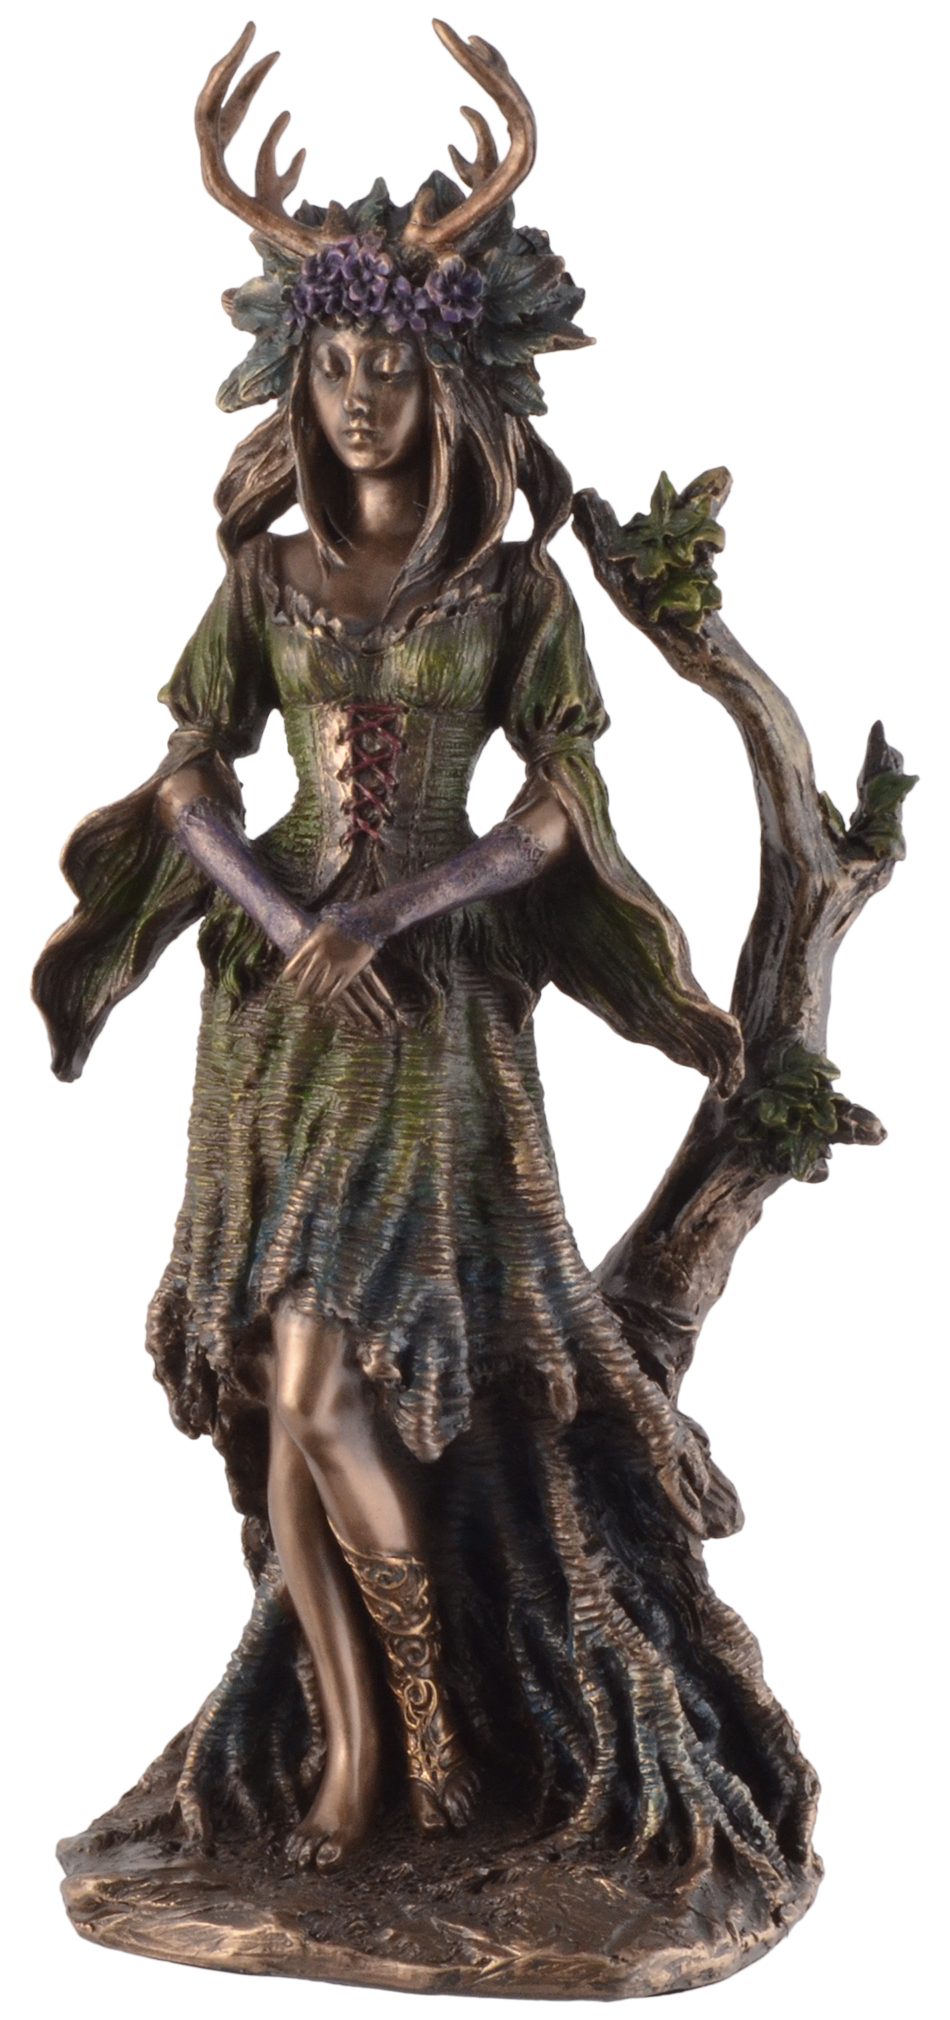 Vogler direct Gmbh Dekofigur Flidhais keltische Göttin des Waldes - by Veronese, von Hand bronziert und coloriert, LxBxH ca. 13x8x26cm